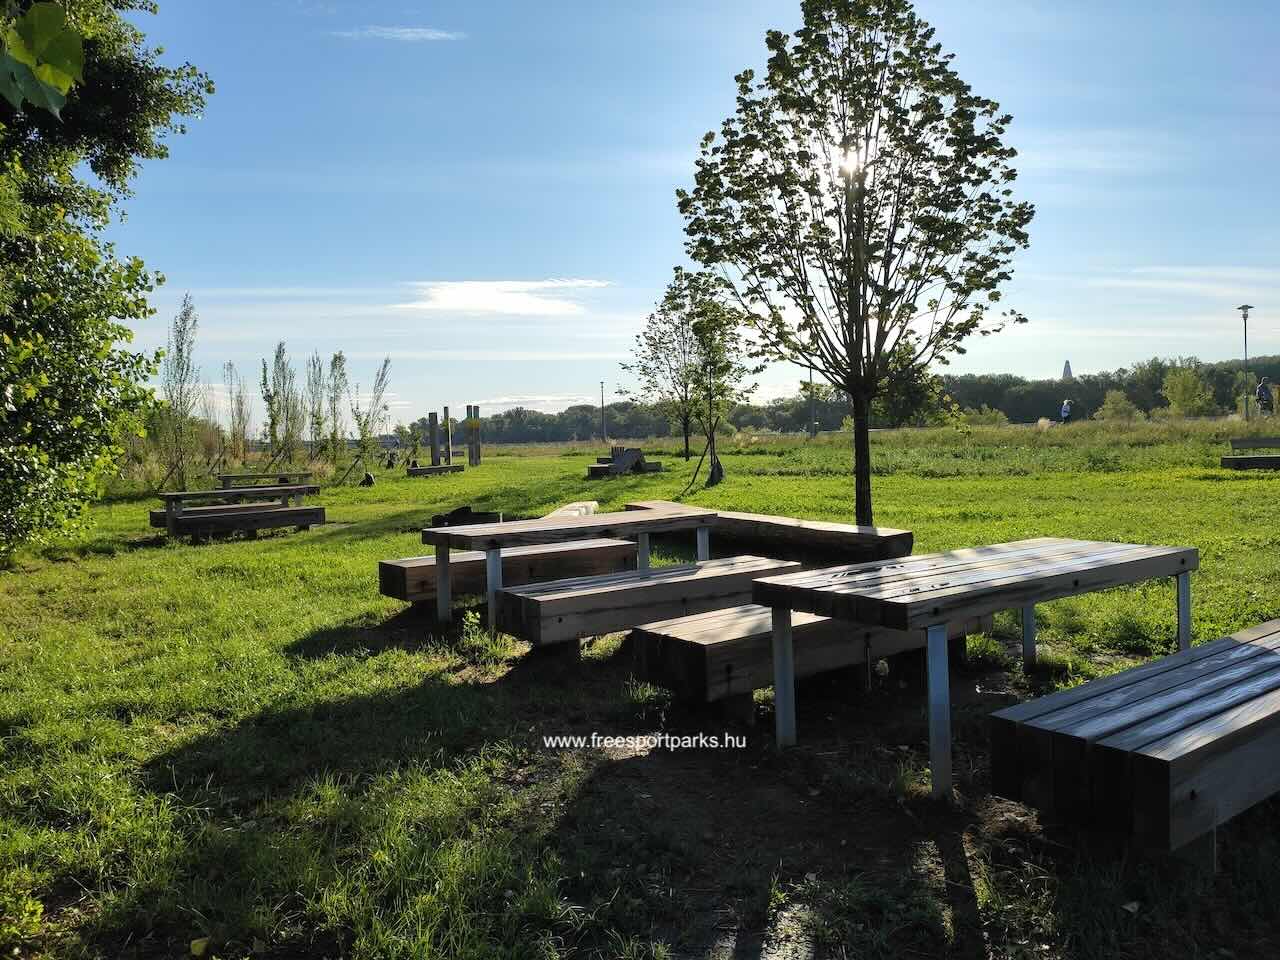 sakkozásra alkalmas asztalok padokkal a piknikező területen, Pünkösdfürdő Szabadidőpark - Free Sport Parks Térkép